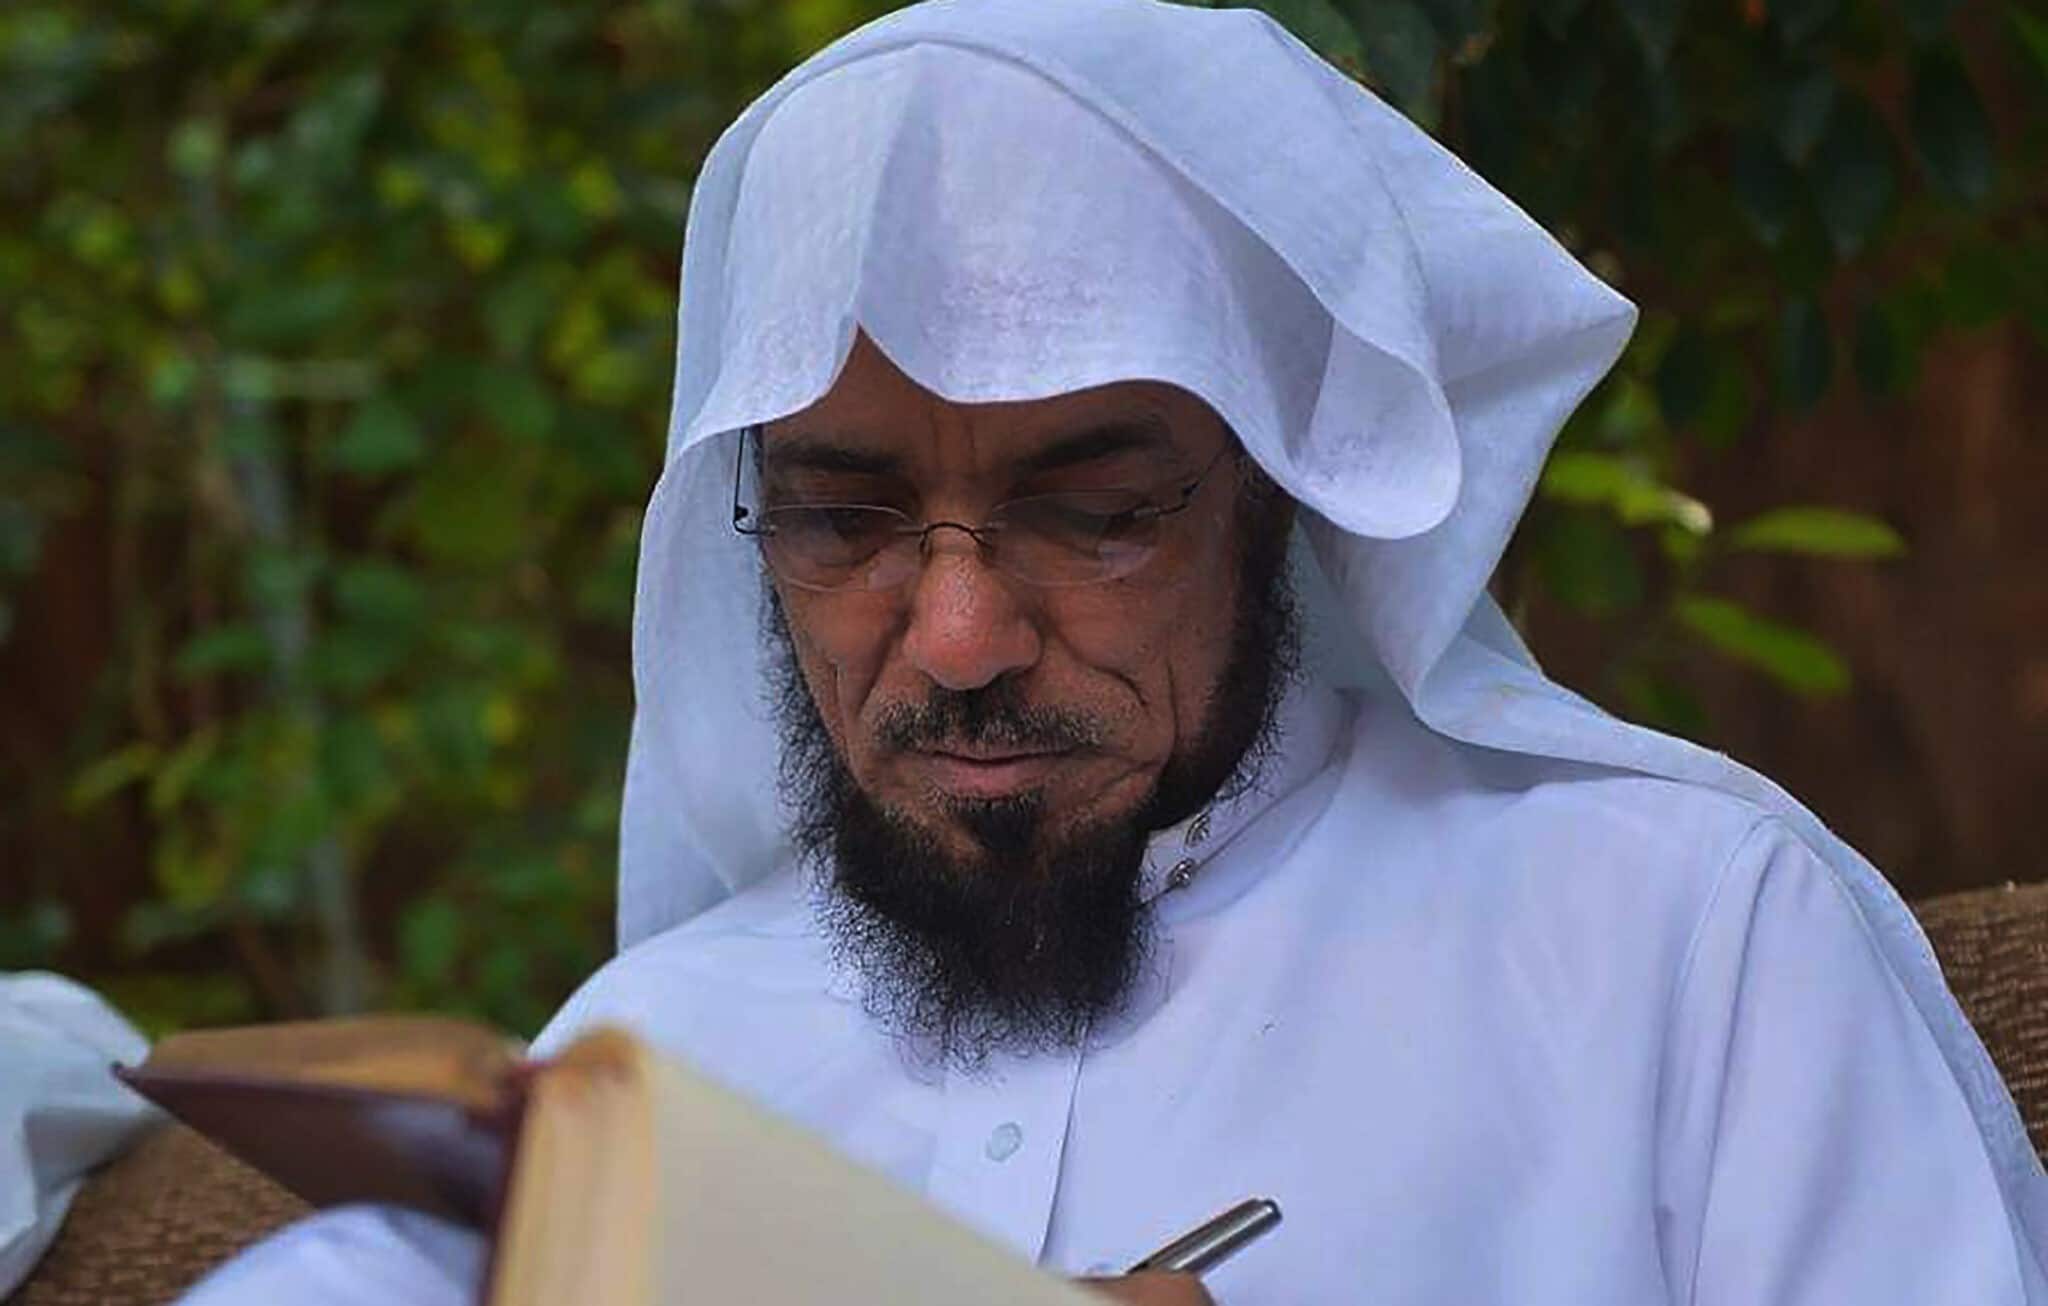 سلمان العودة يقتل ببطء في سجون السعودية watanserb.com